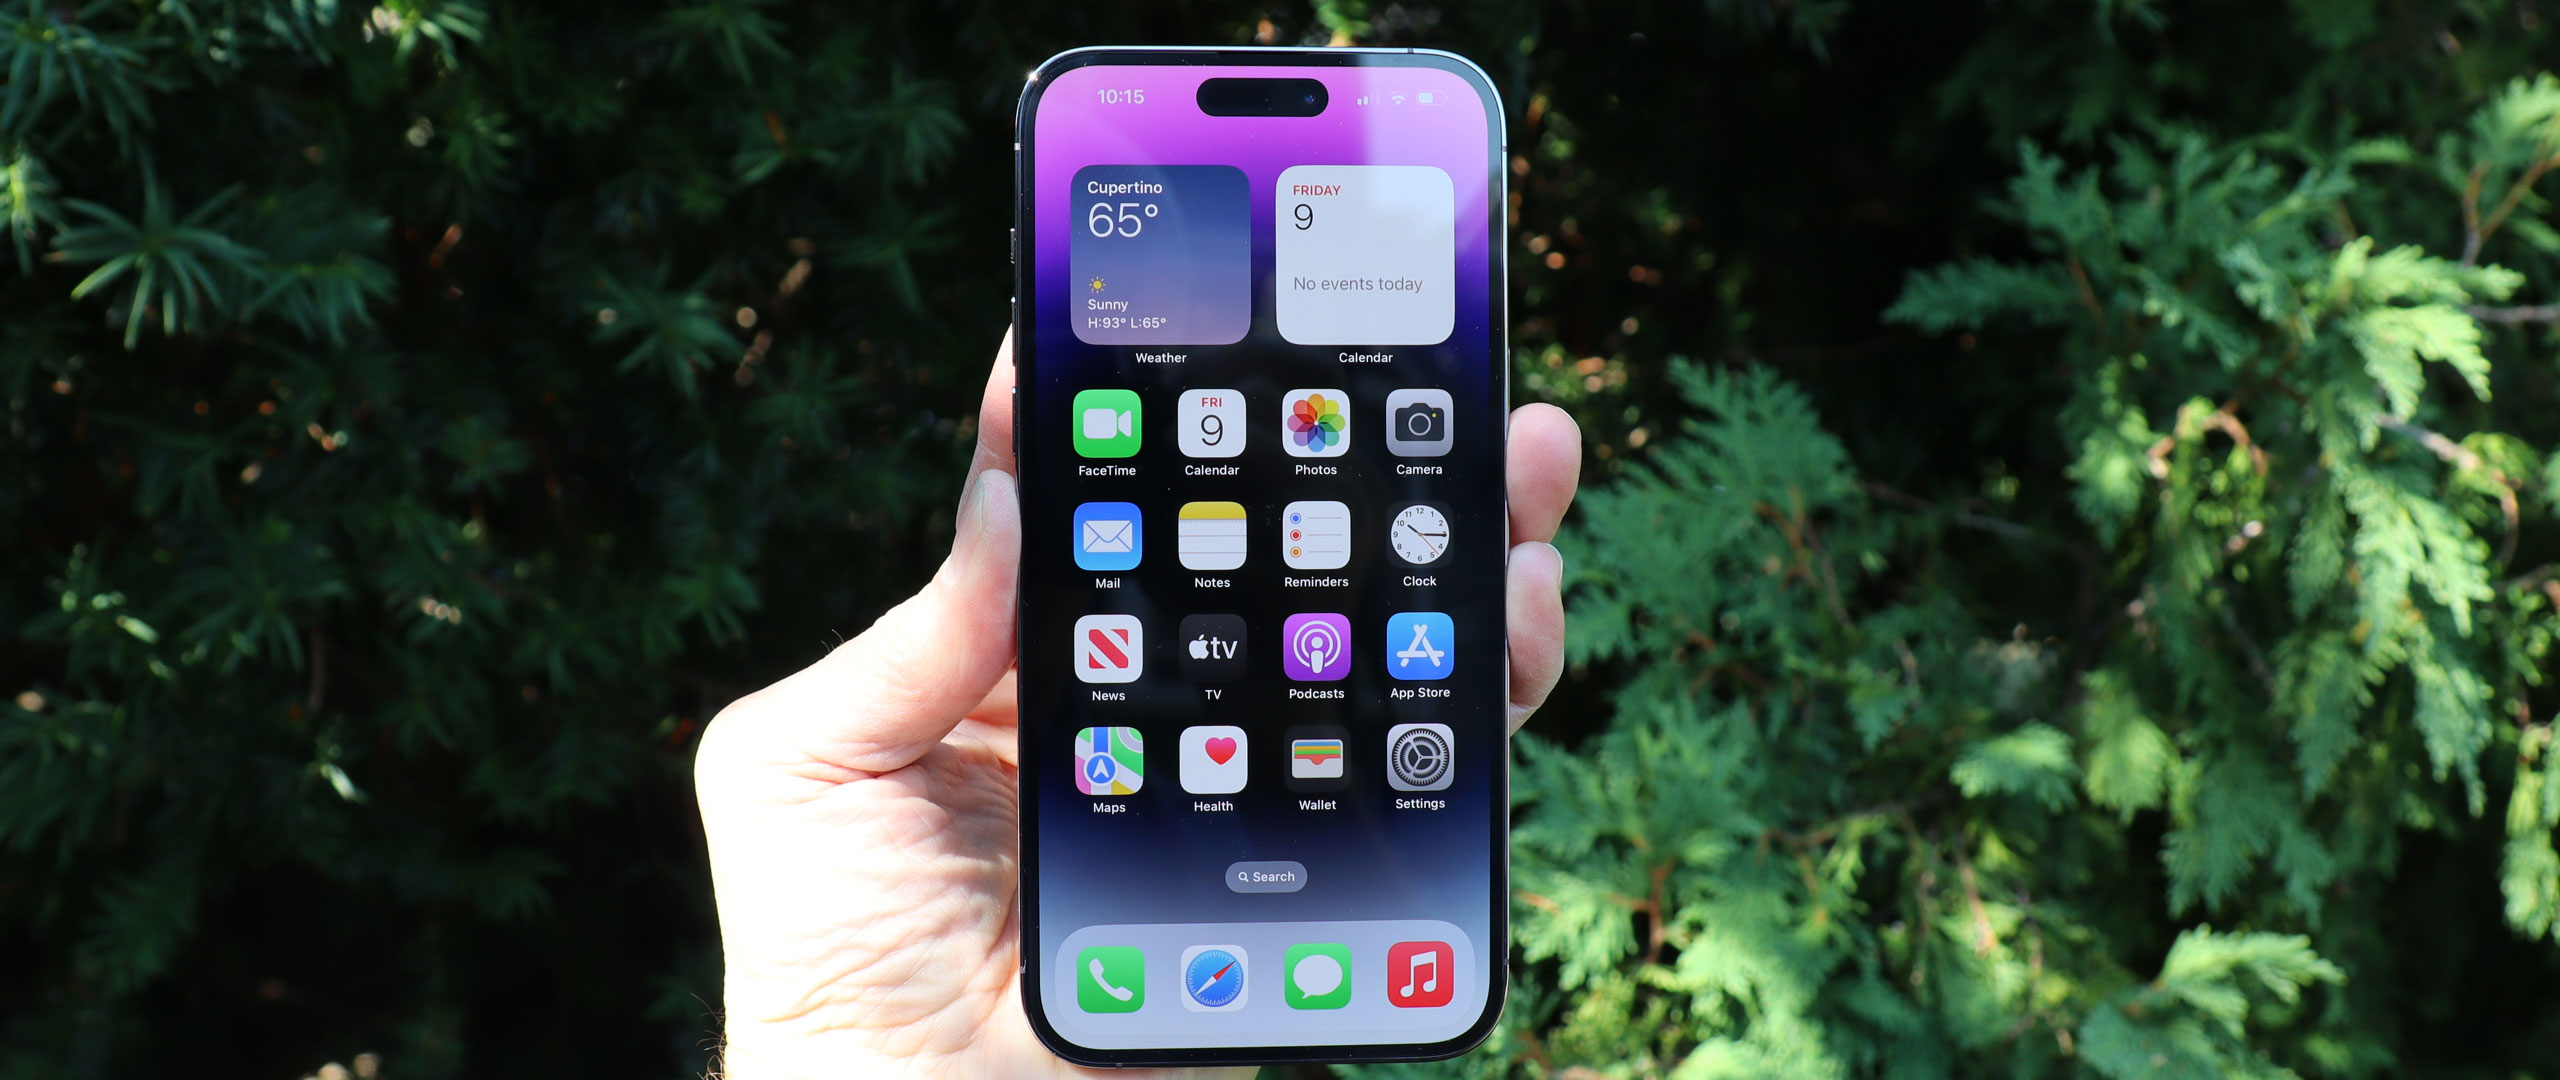 Hãy xem đánh giá iPhone 14 Pro Max để biết thêm về sự thẩm mỹ đẳng cấp của nó, cùng với tính năng ưu việt và sự hiệu quả trong sử dụng. Bạn sẽ không thể cưỡng lại được vẻ đẹp và sự hấp dẫn của sản phẩm này.